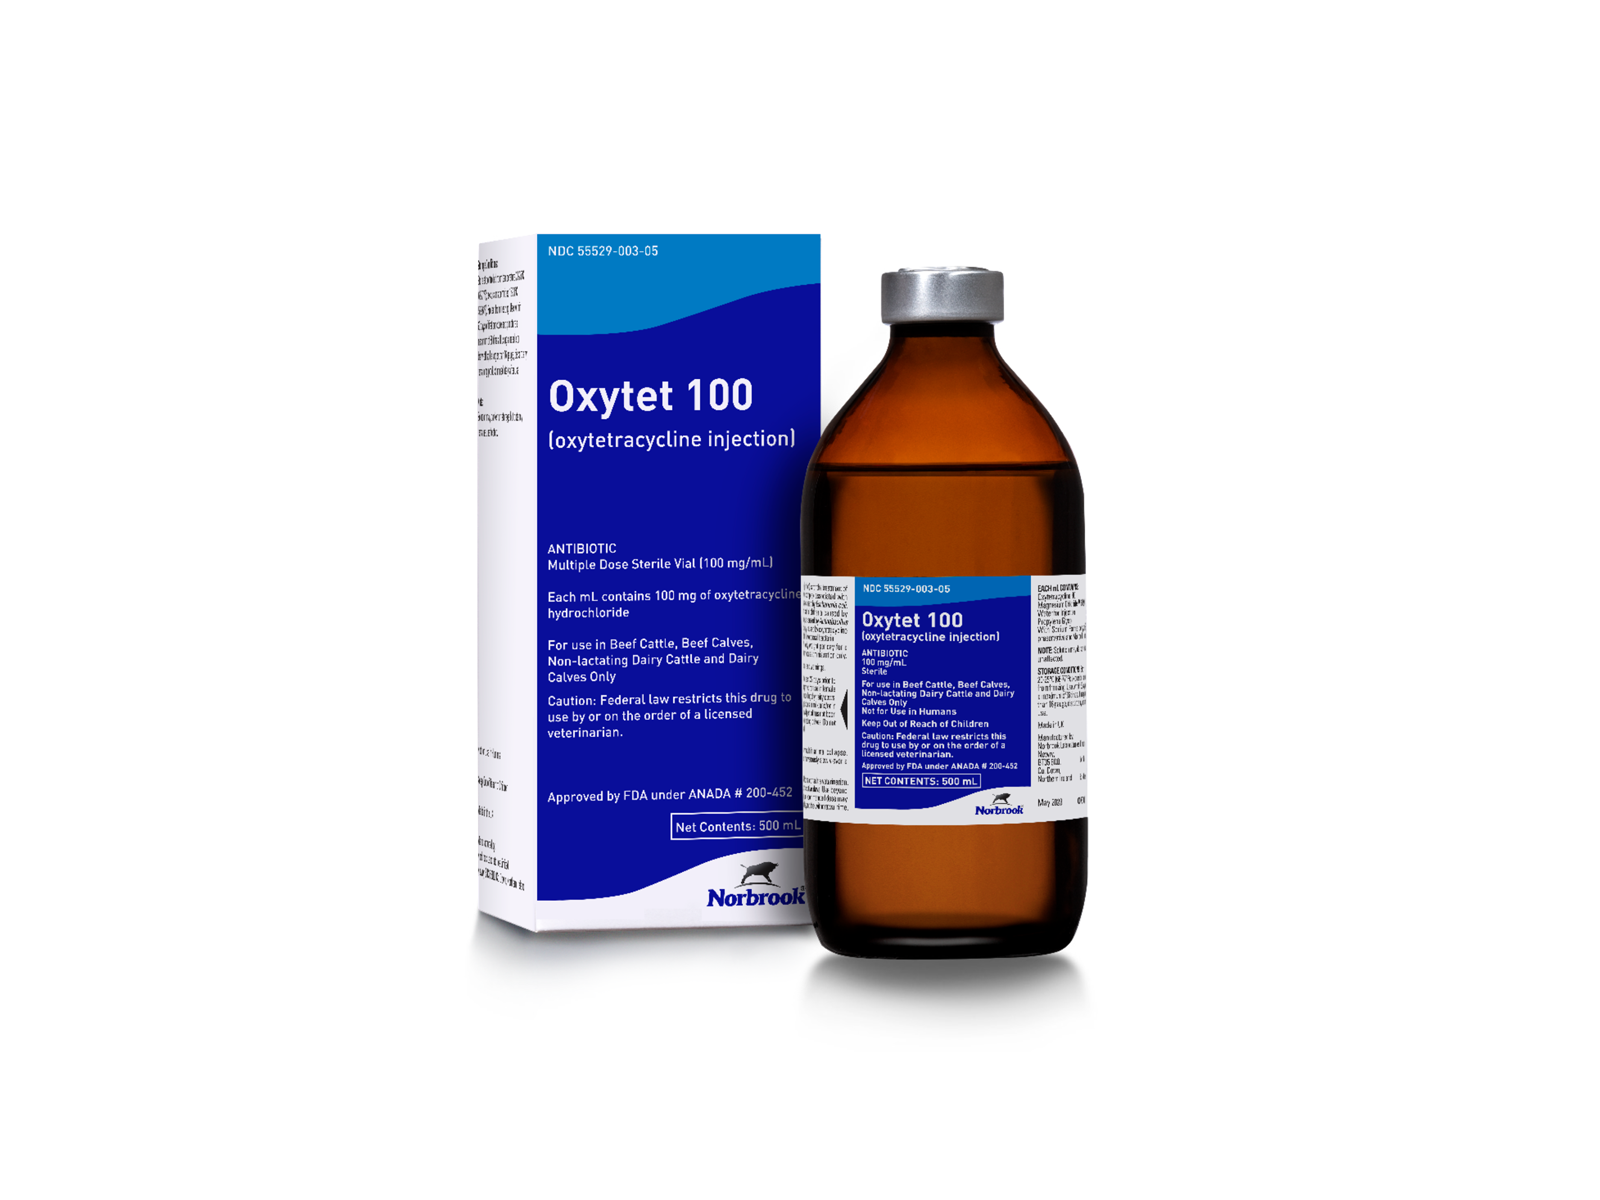 Oxytet 100 (oxytetracycline injection)